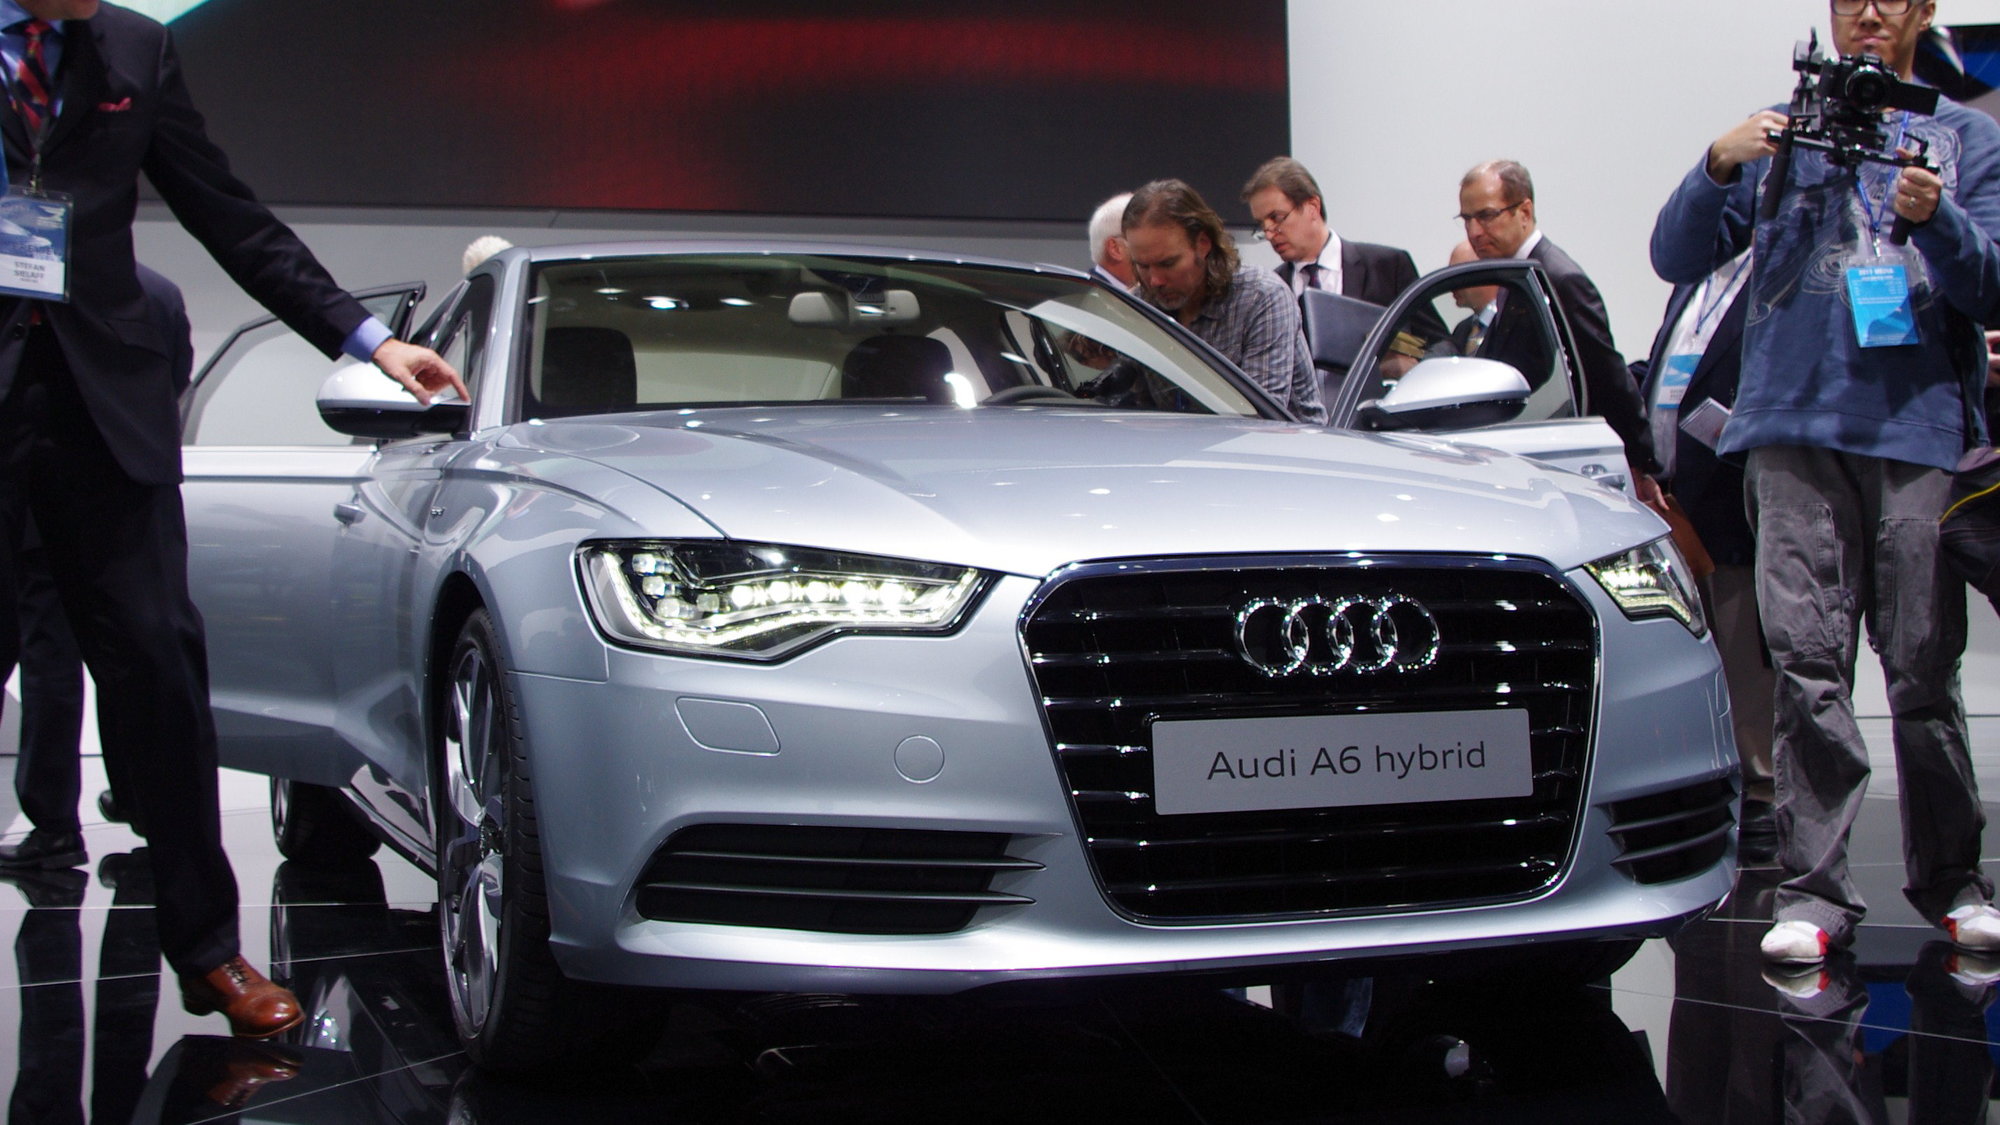 Audi A6 Hybrid:  Center of Attention